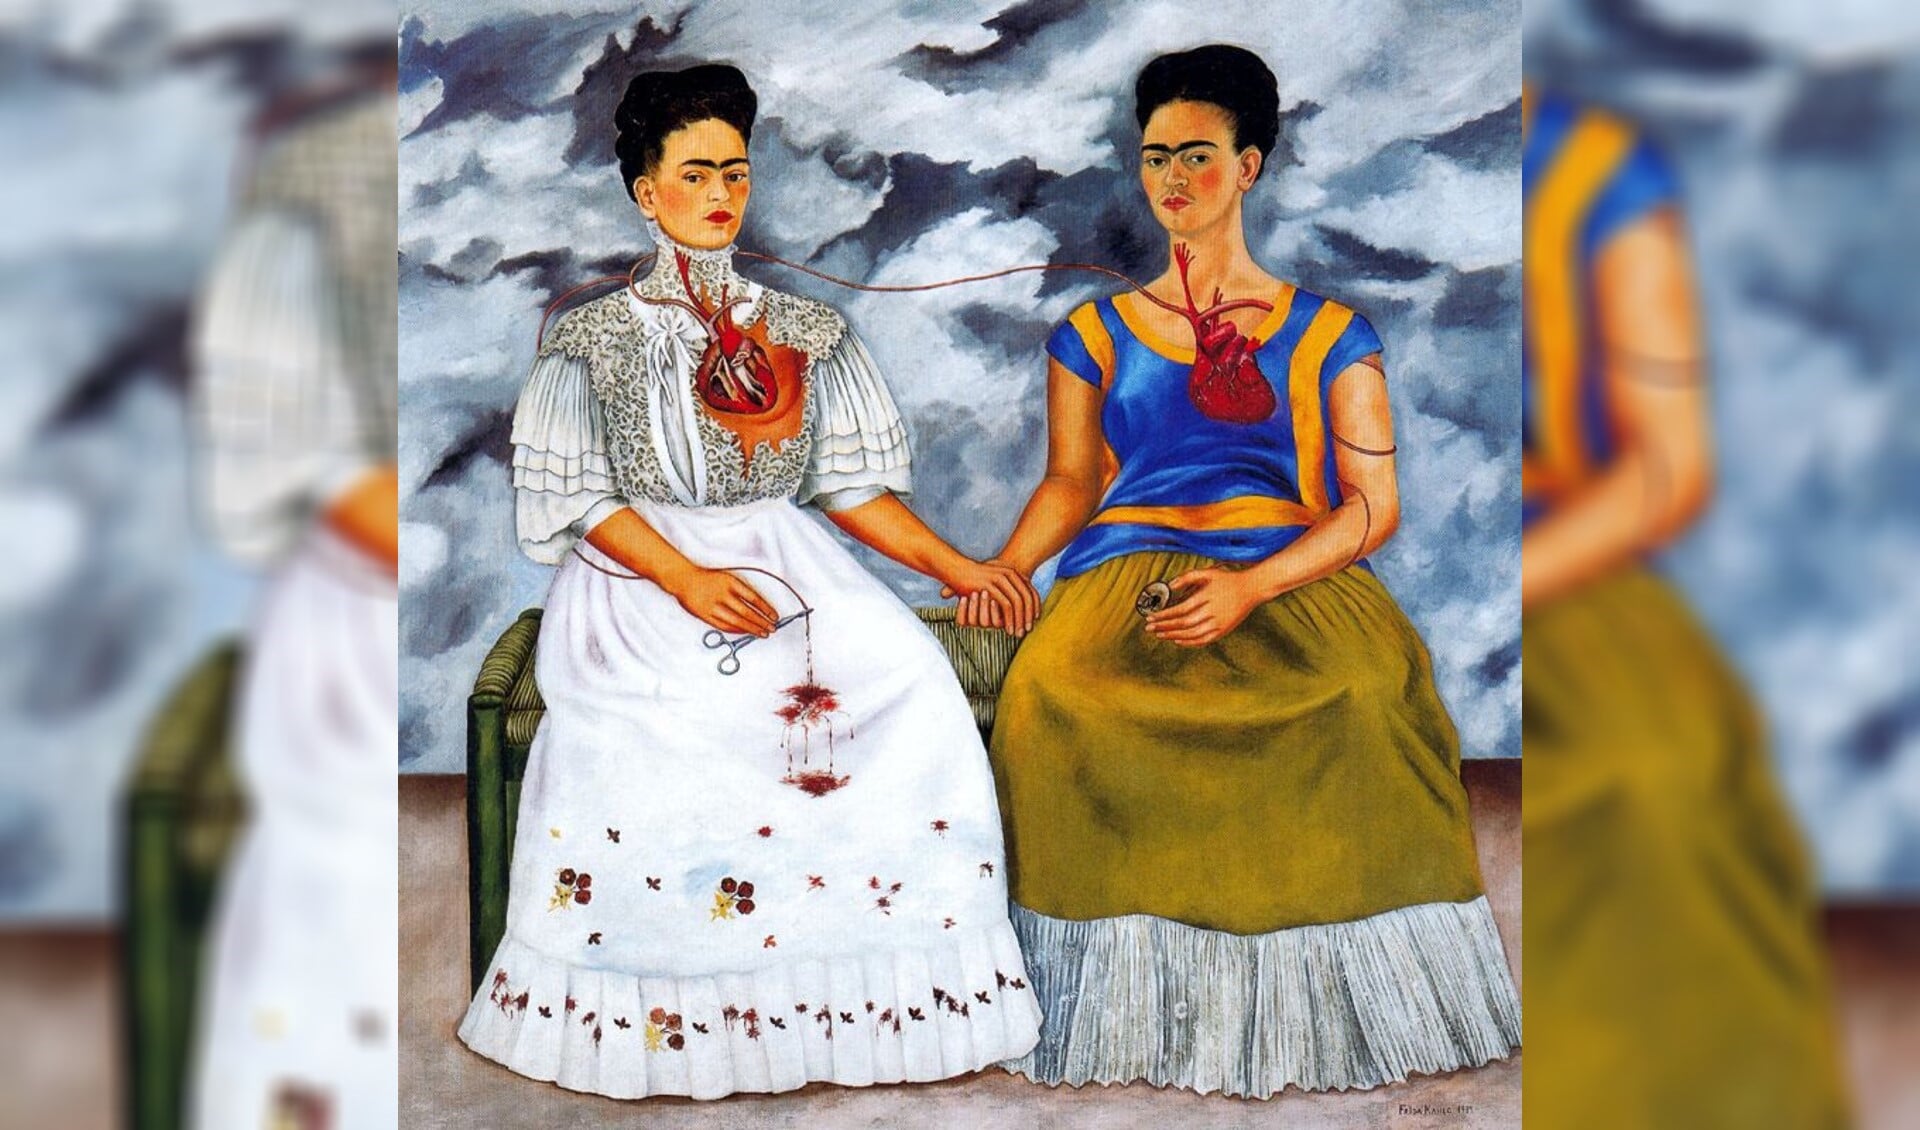 Een van de zelfportretten van Frida Kahlo.